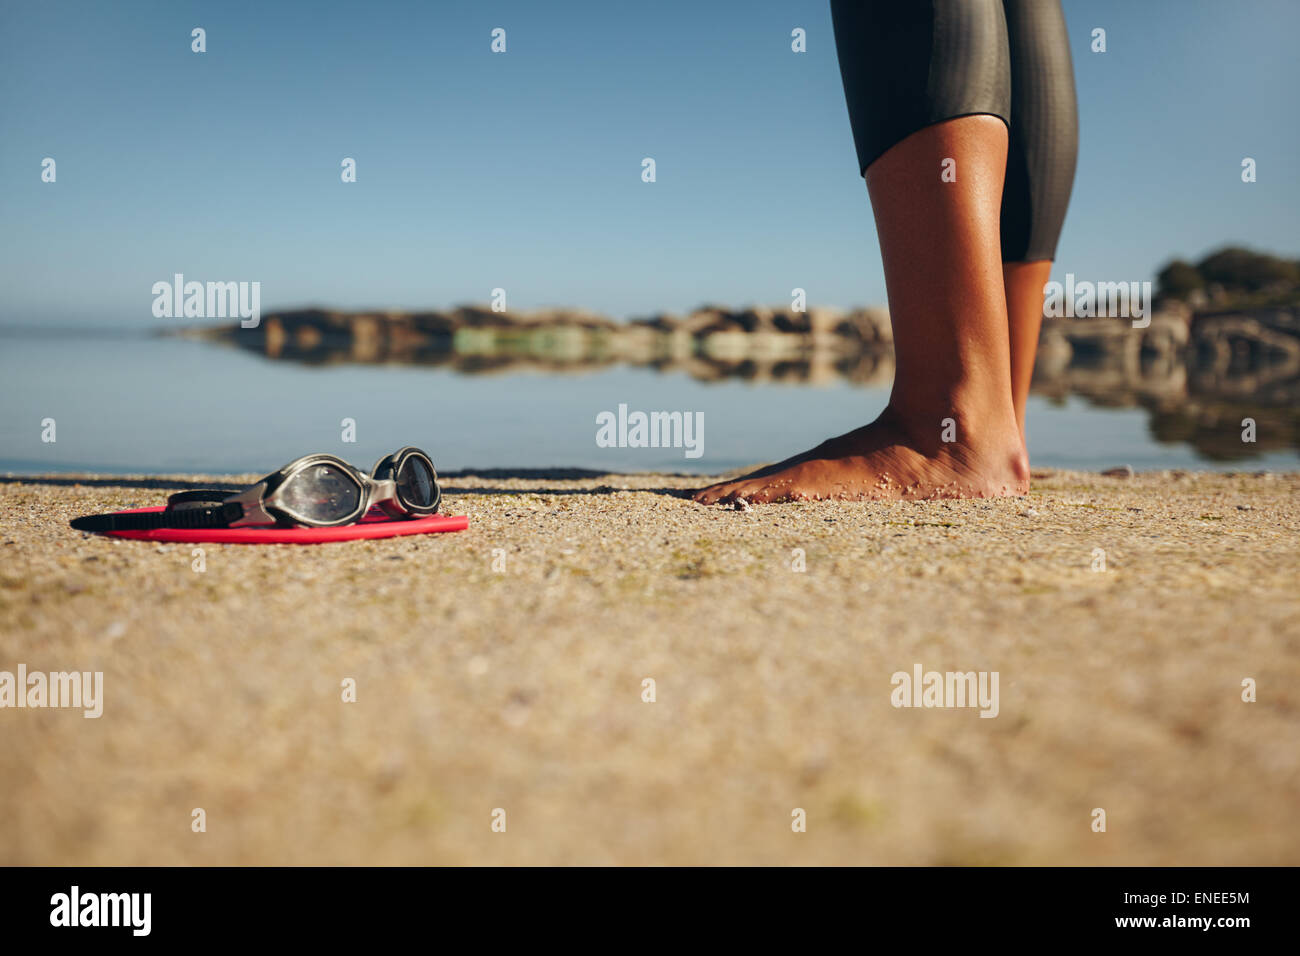 Schwimmen-Schutzbrillen auf dem Sand mit Füßen einer Frau stehen. Brille im Vordergrund. Stockfoto